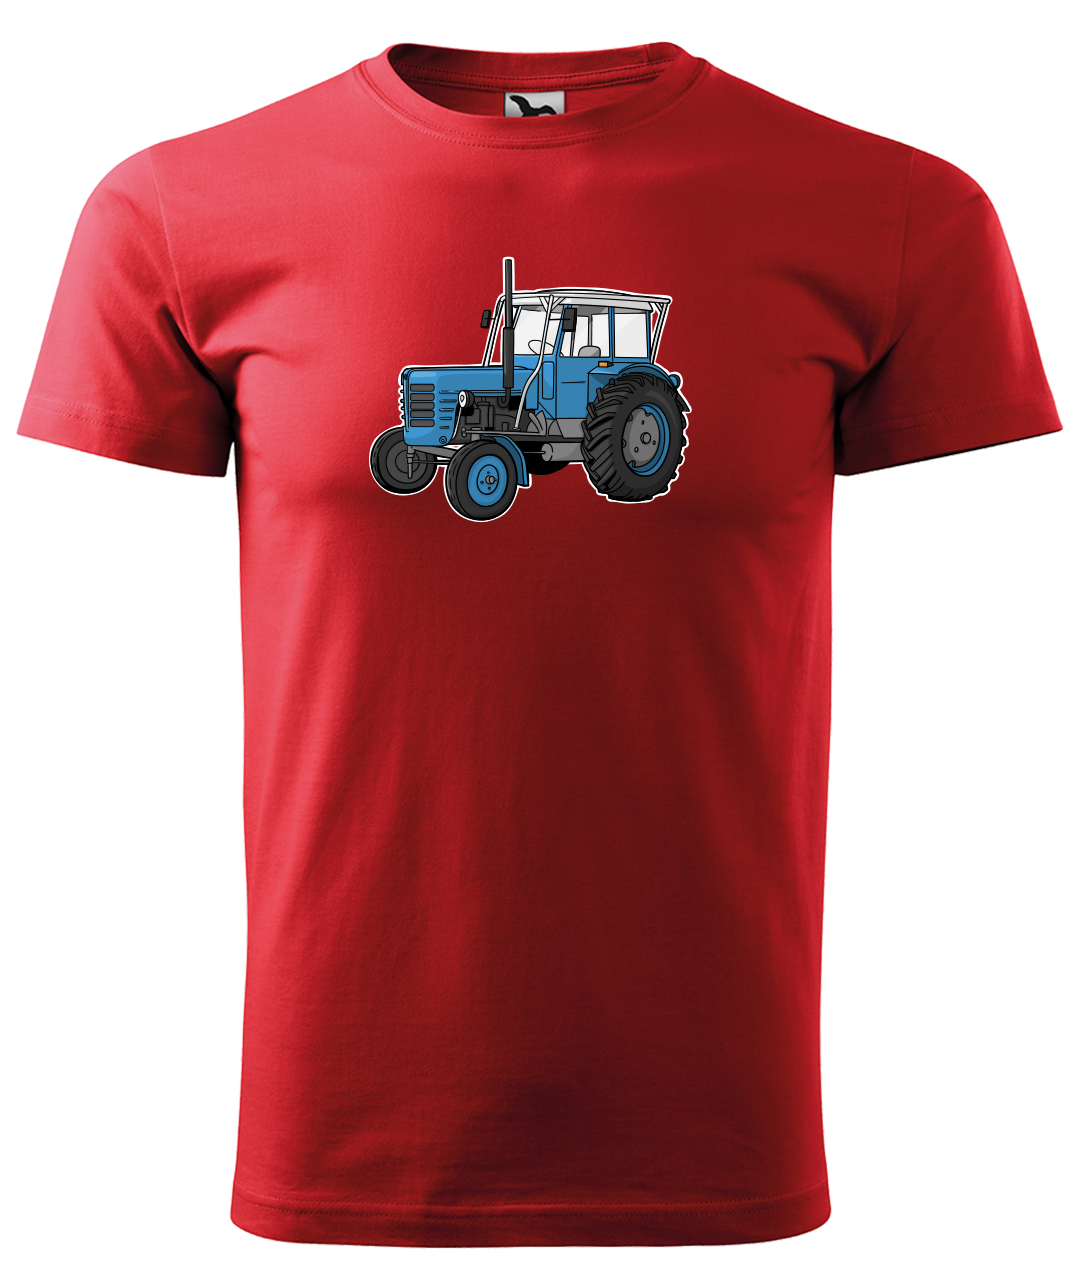 Dětské tričko s traktorem - Starý traktor Velikost: 6 let / 122 cm, Barva: Červená (07)